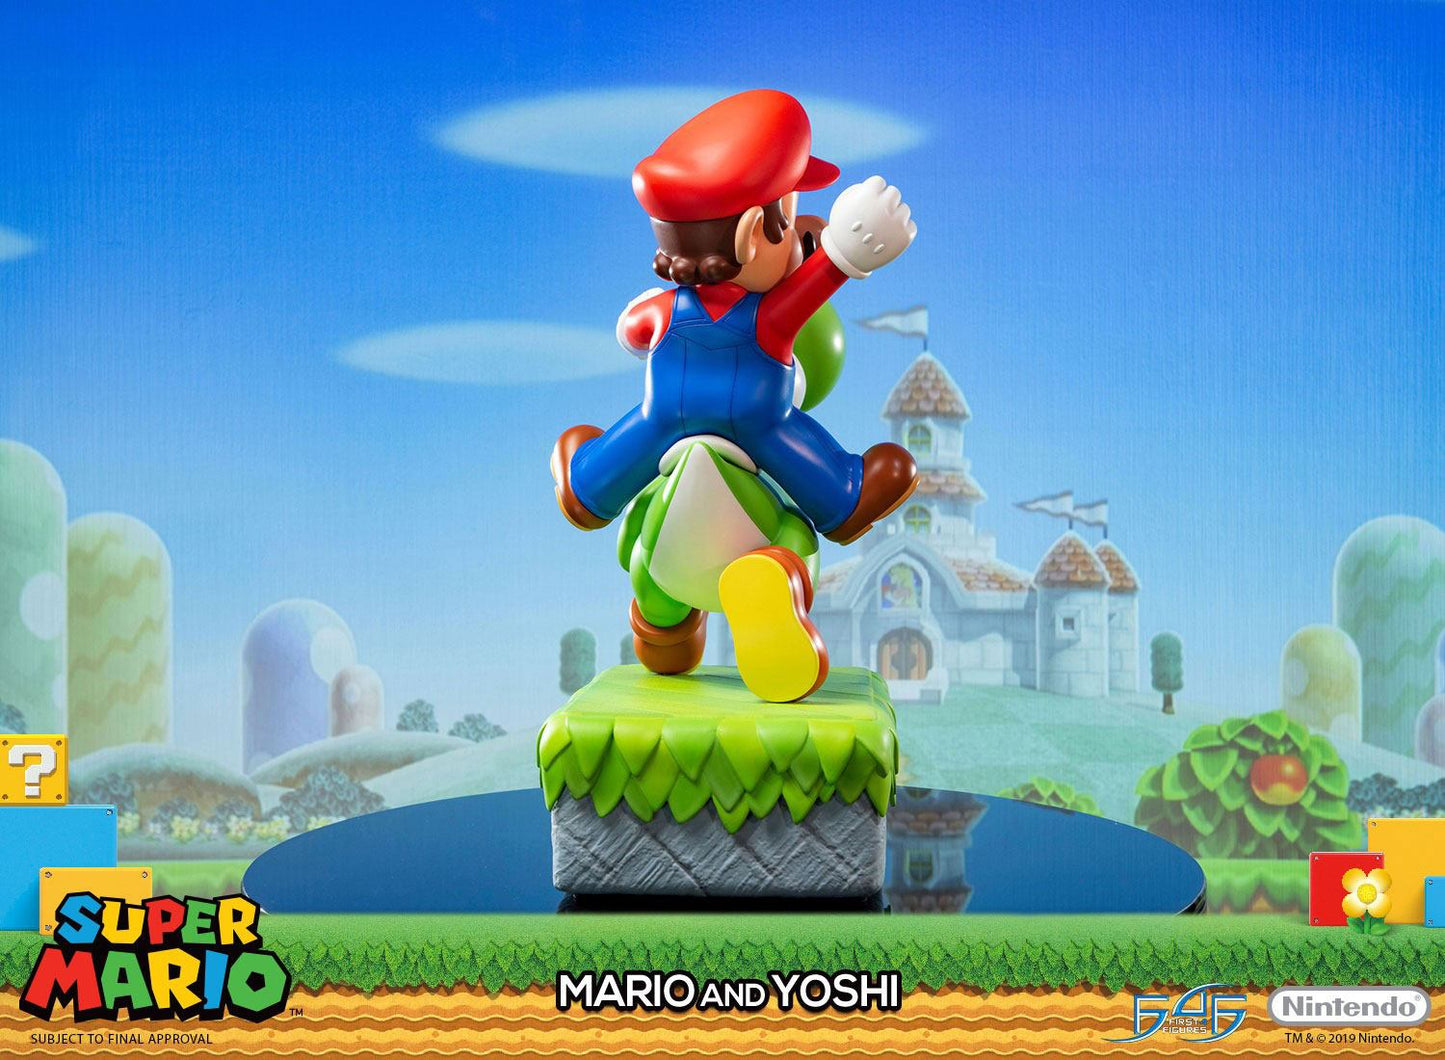 Super Mario & Yoshi Statue